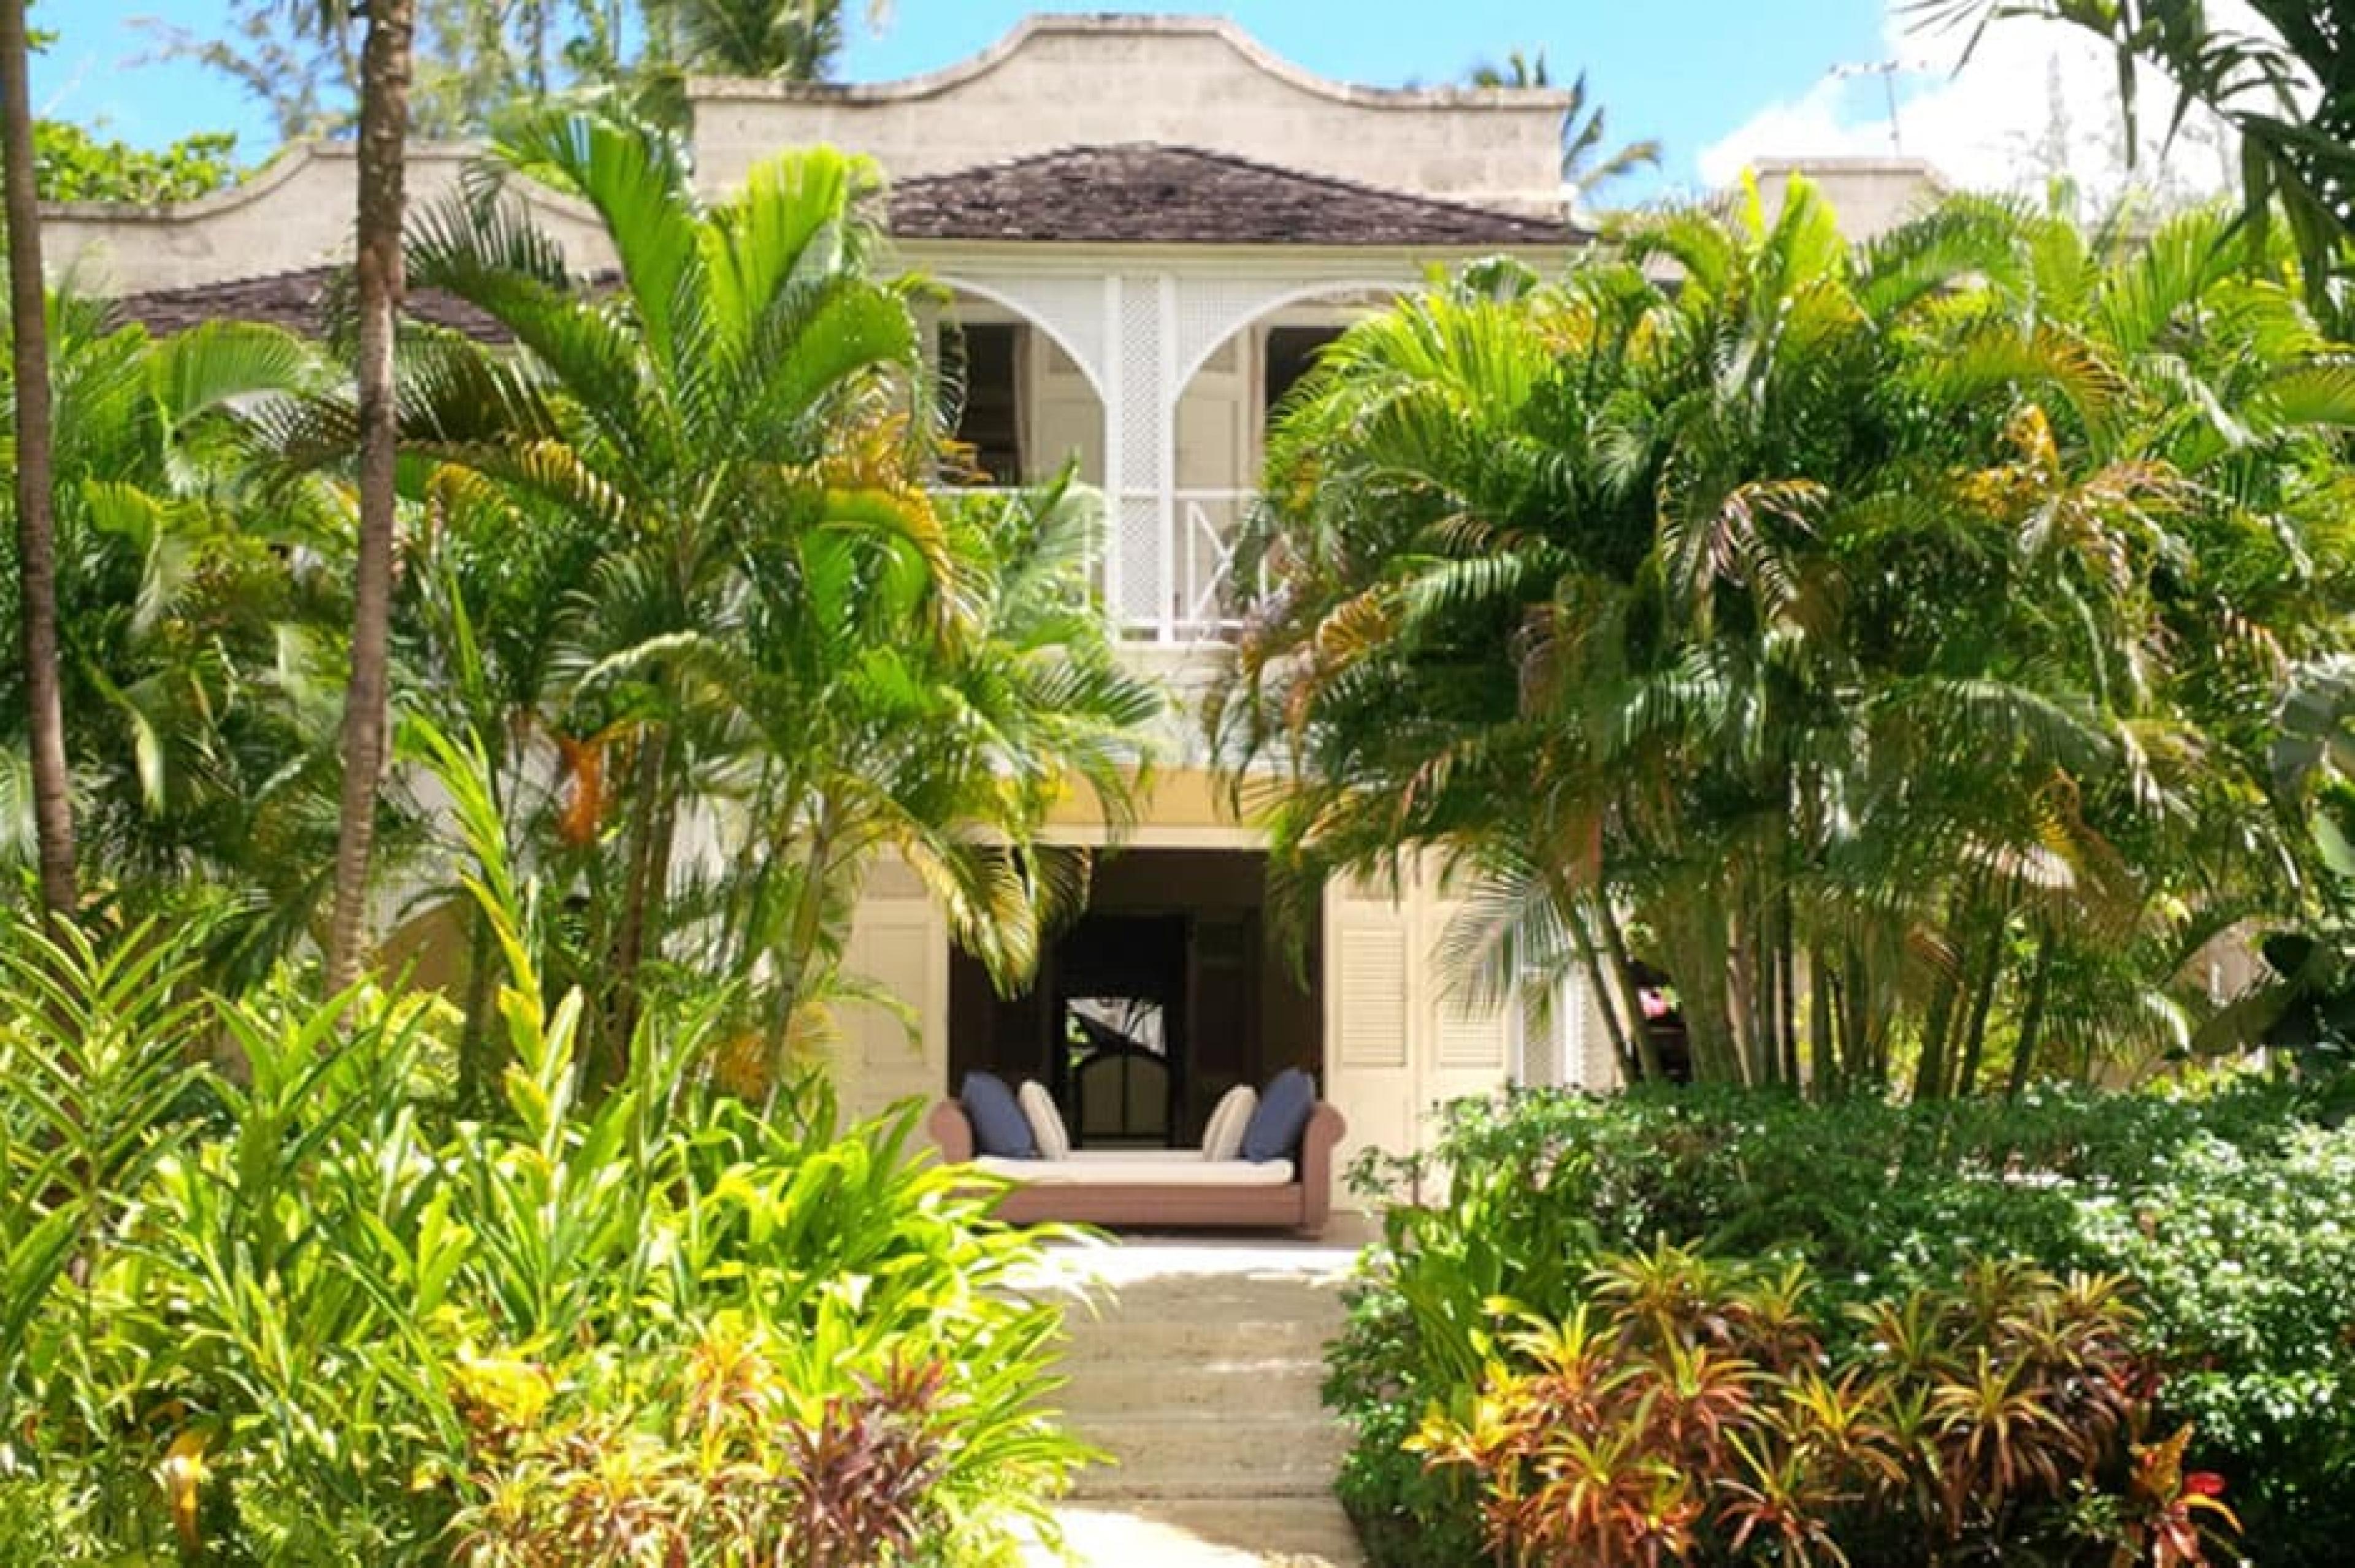 Exterior View - Villas, Barbados, Caribbean